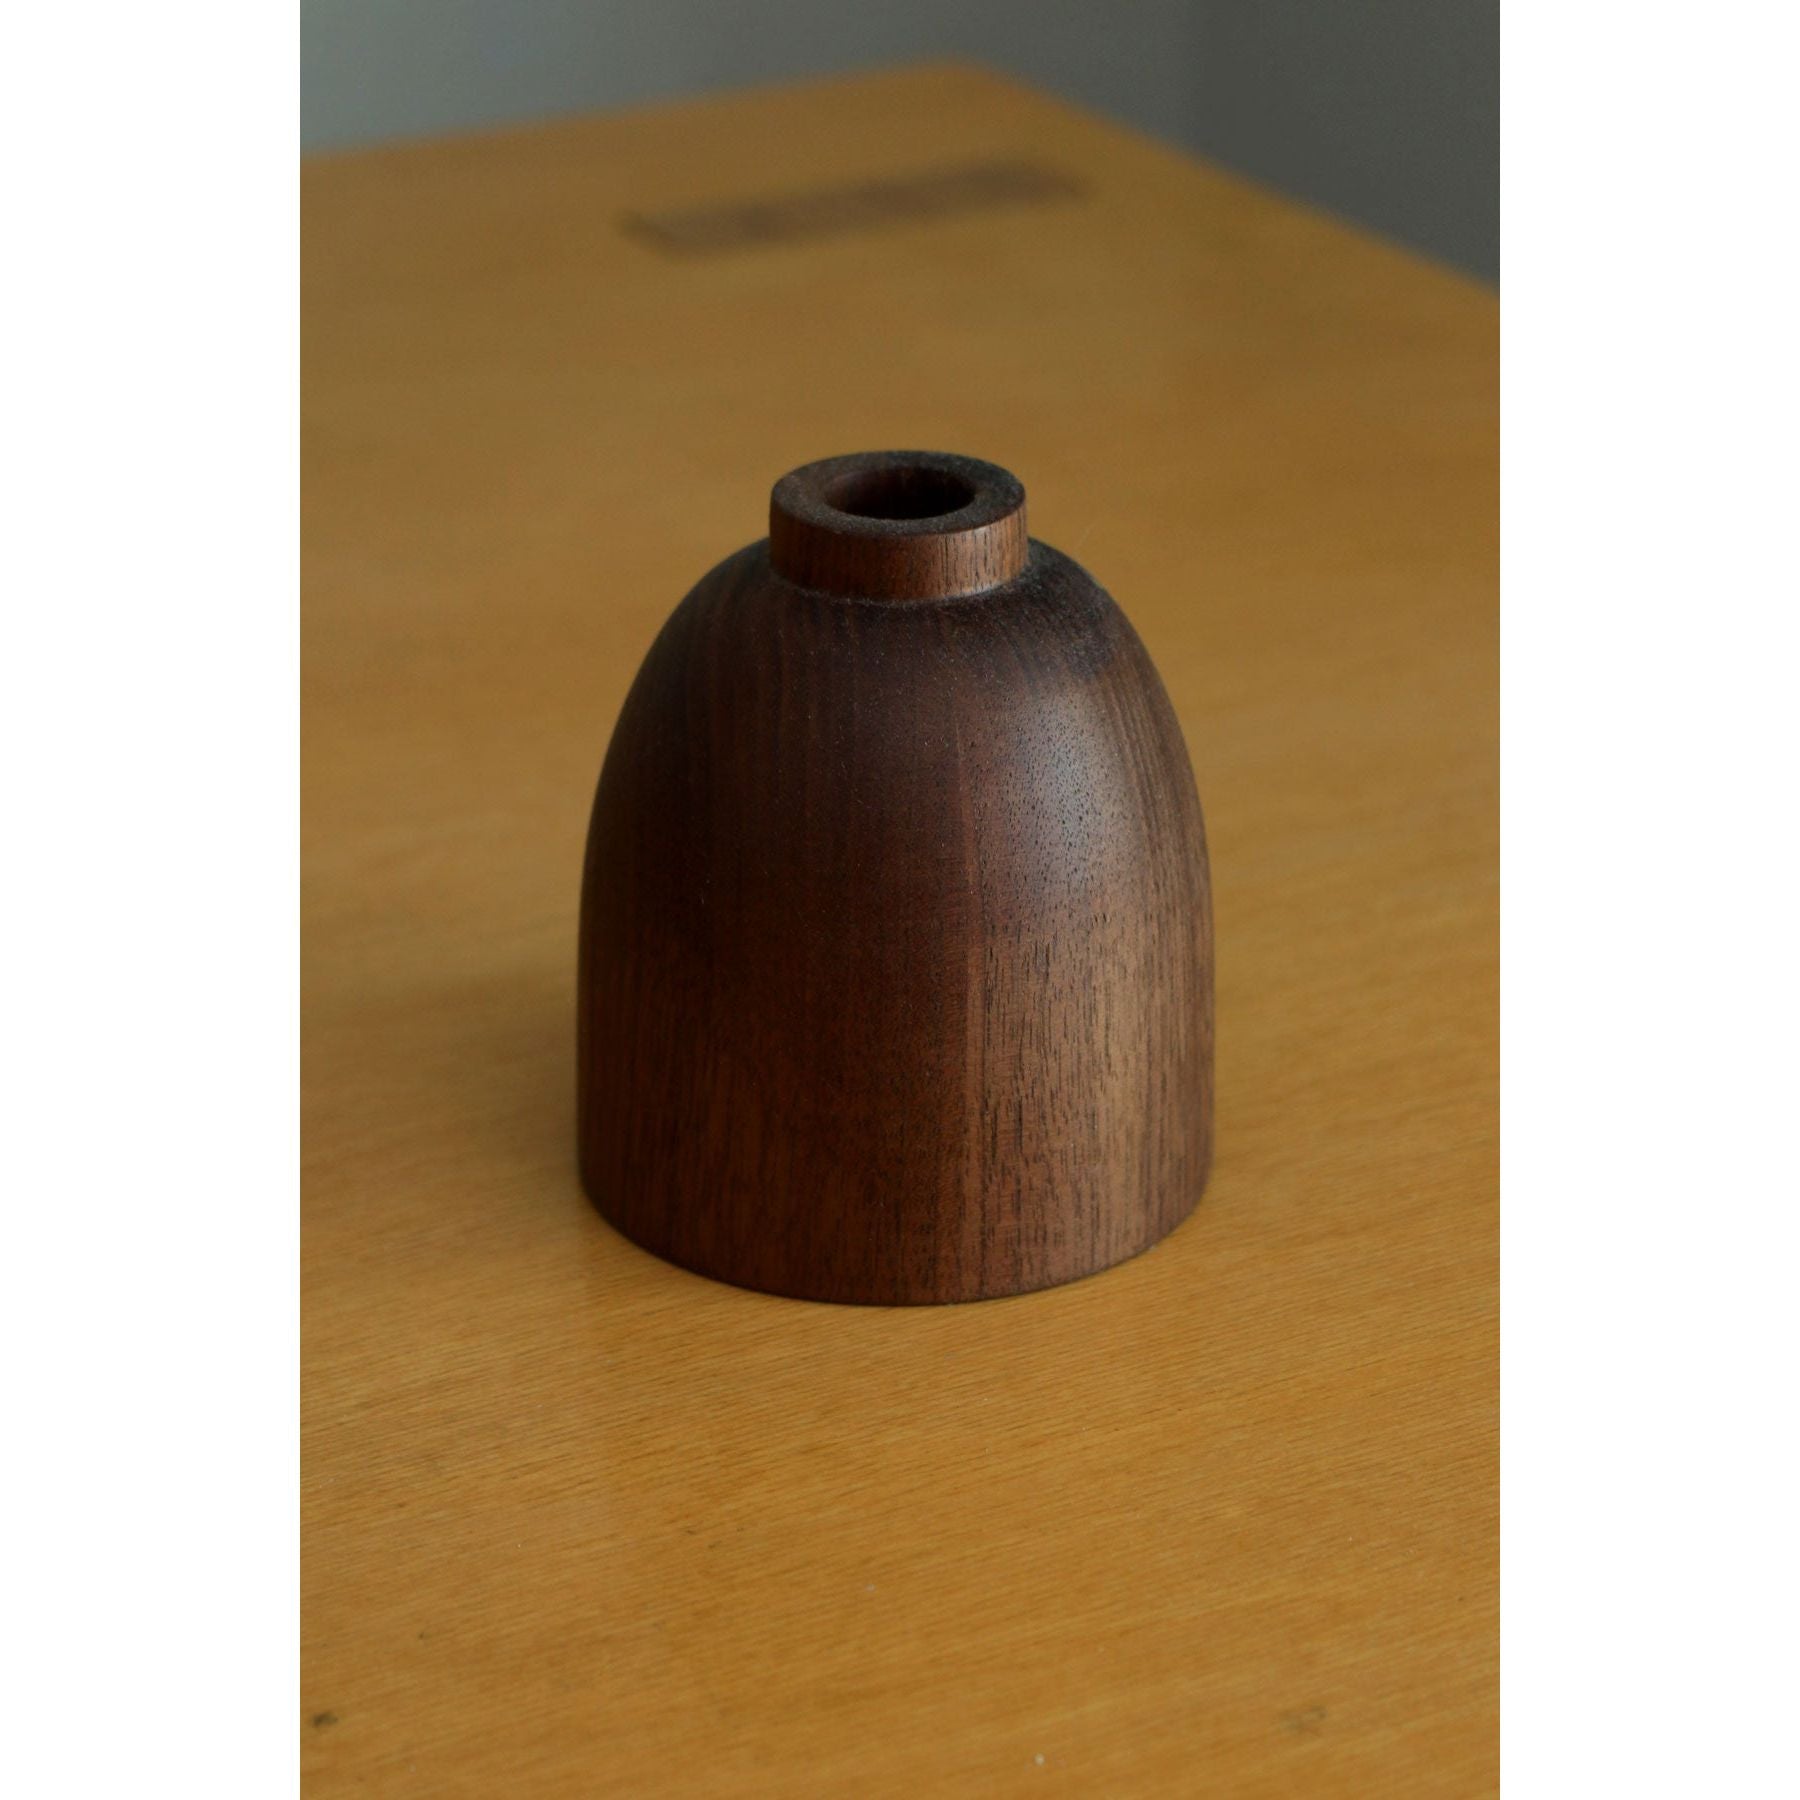 Walnut Bud Vase by koppa.wood